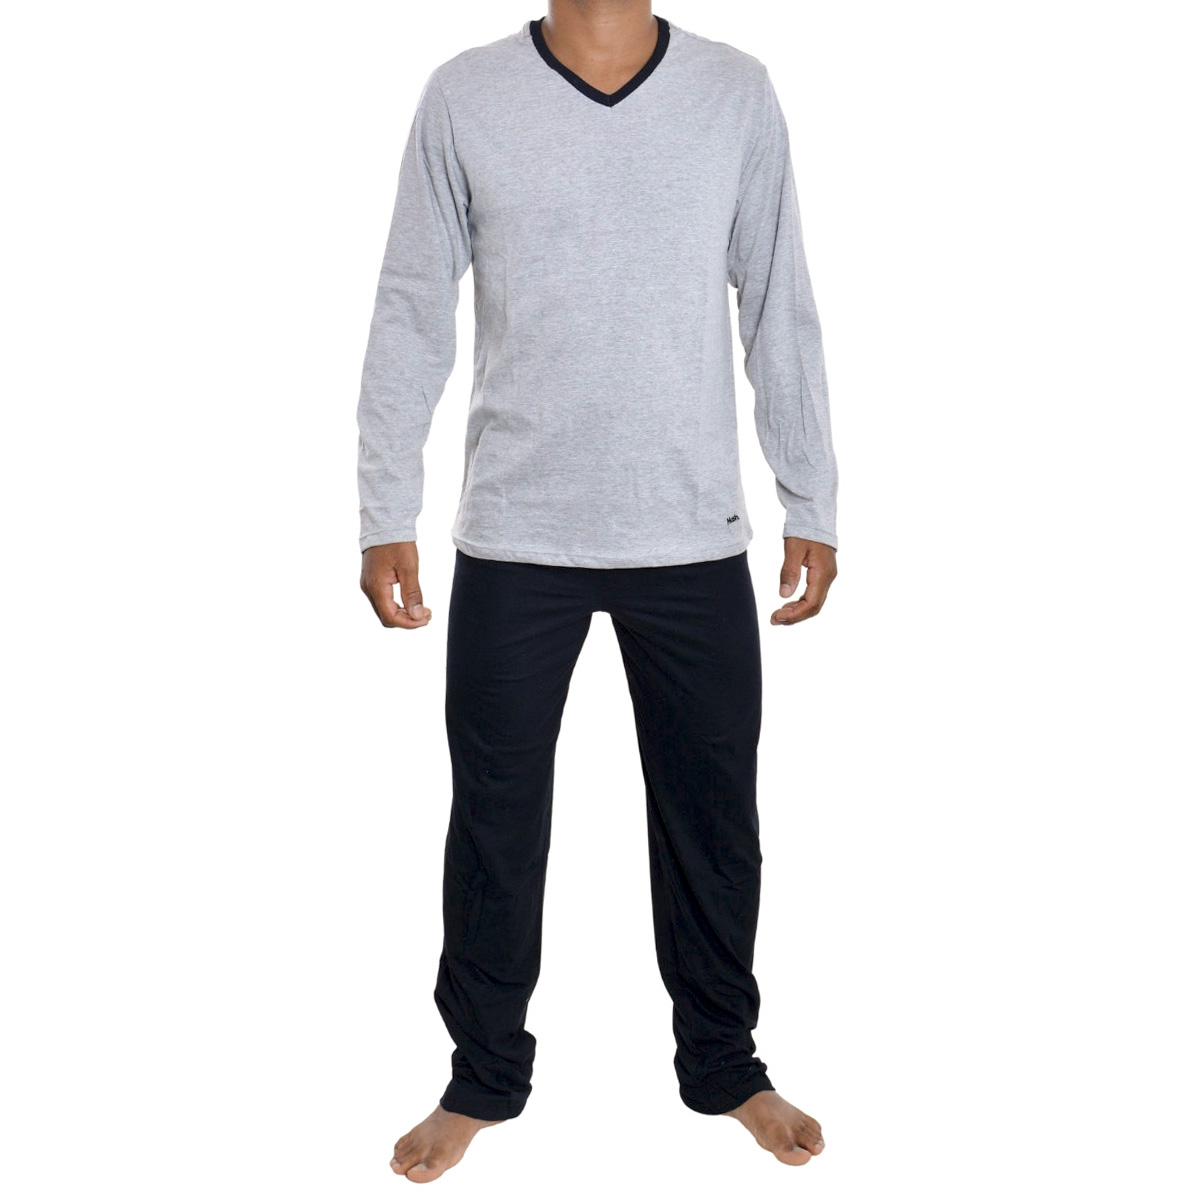 Pijama masculino para o inverno em algodão Mash